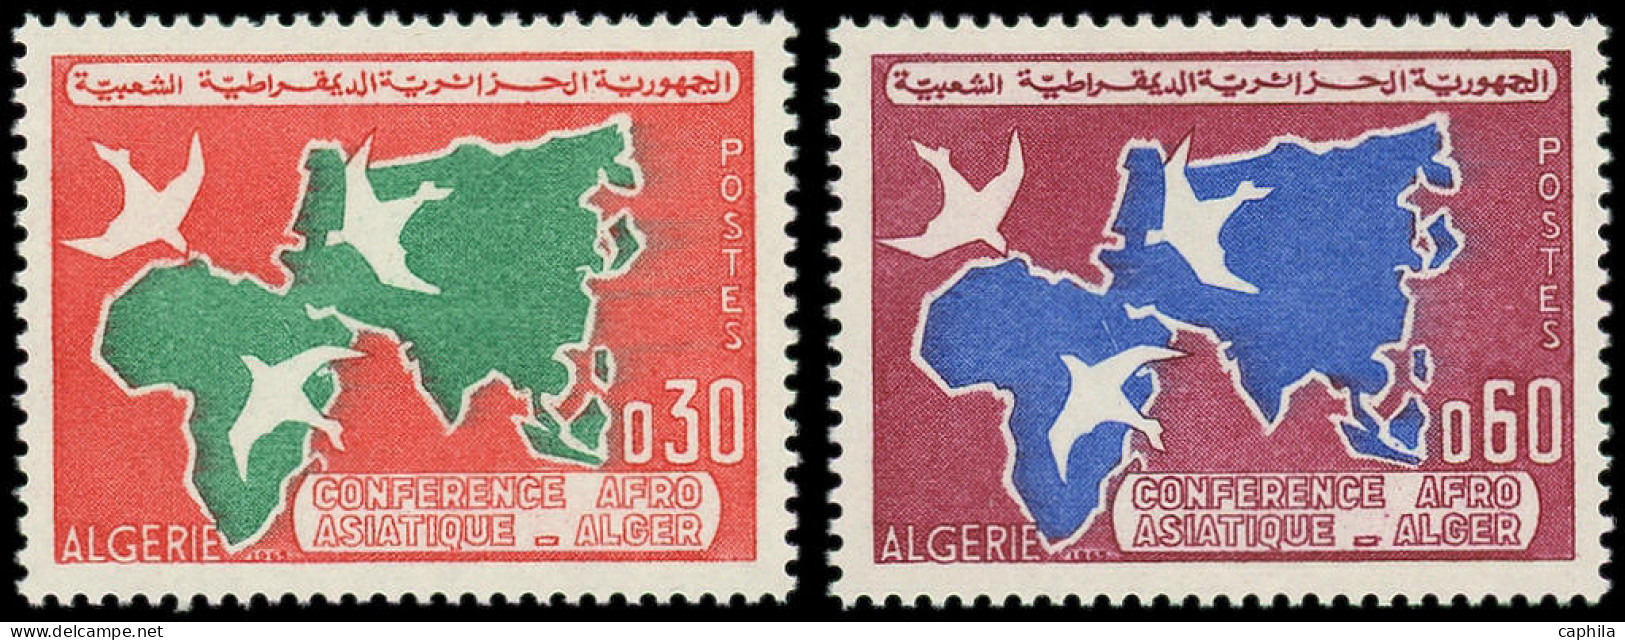 ** ALGERIE - Poste - (1965), Type Non émis "0.30" Et "0.60": Conférence Afro-asiatique Alger - RR - - Algeria (1962-...)